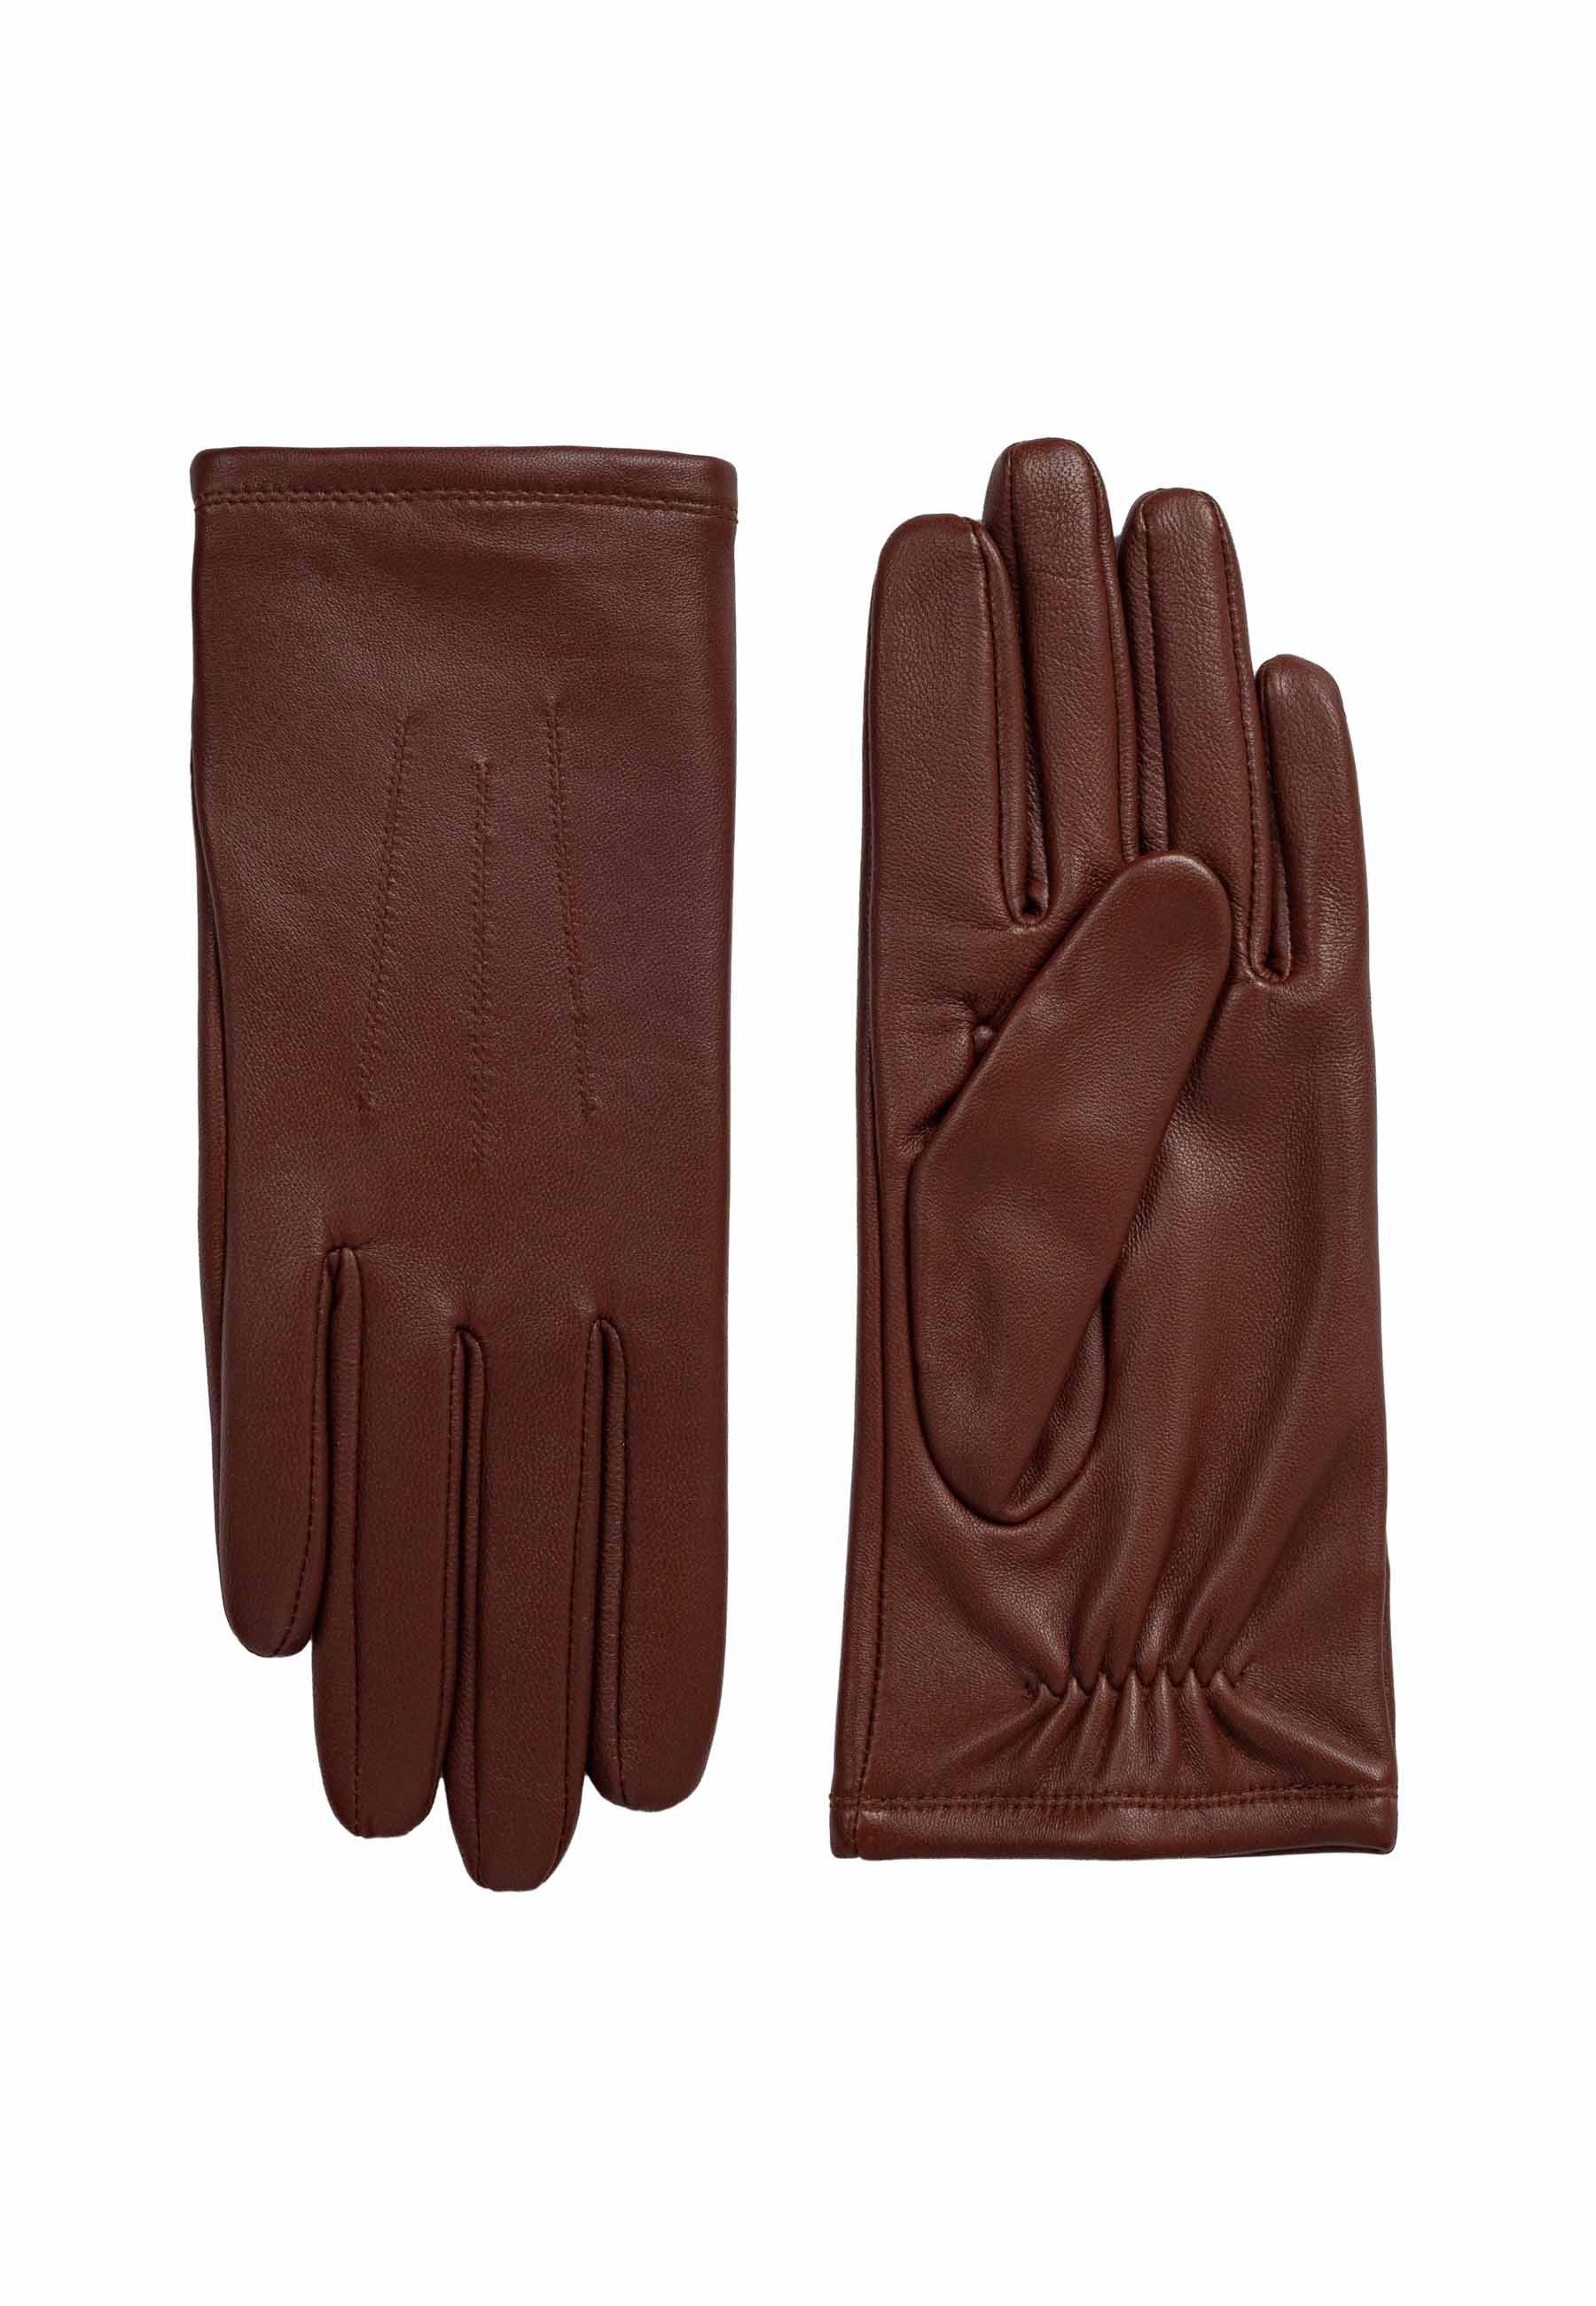 ok Gloves Lederhandschuhe Damenhandschuh Nadja tan 419 | Handschuhe